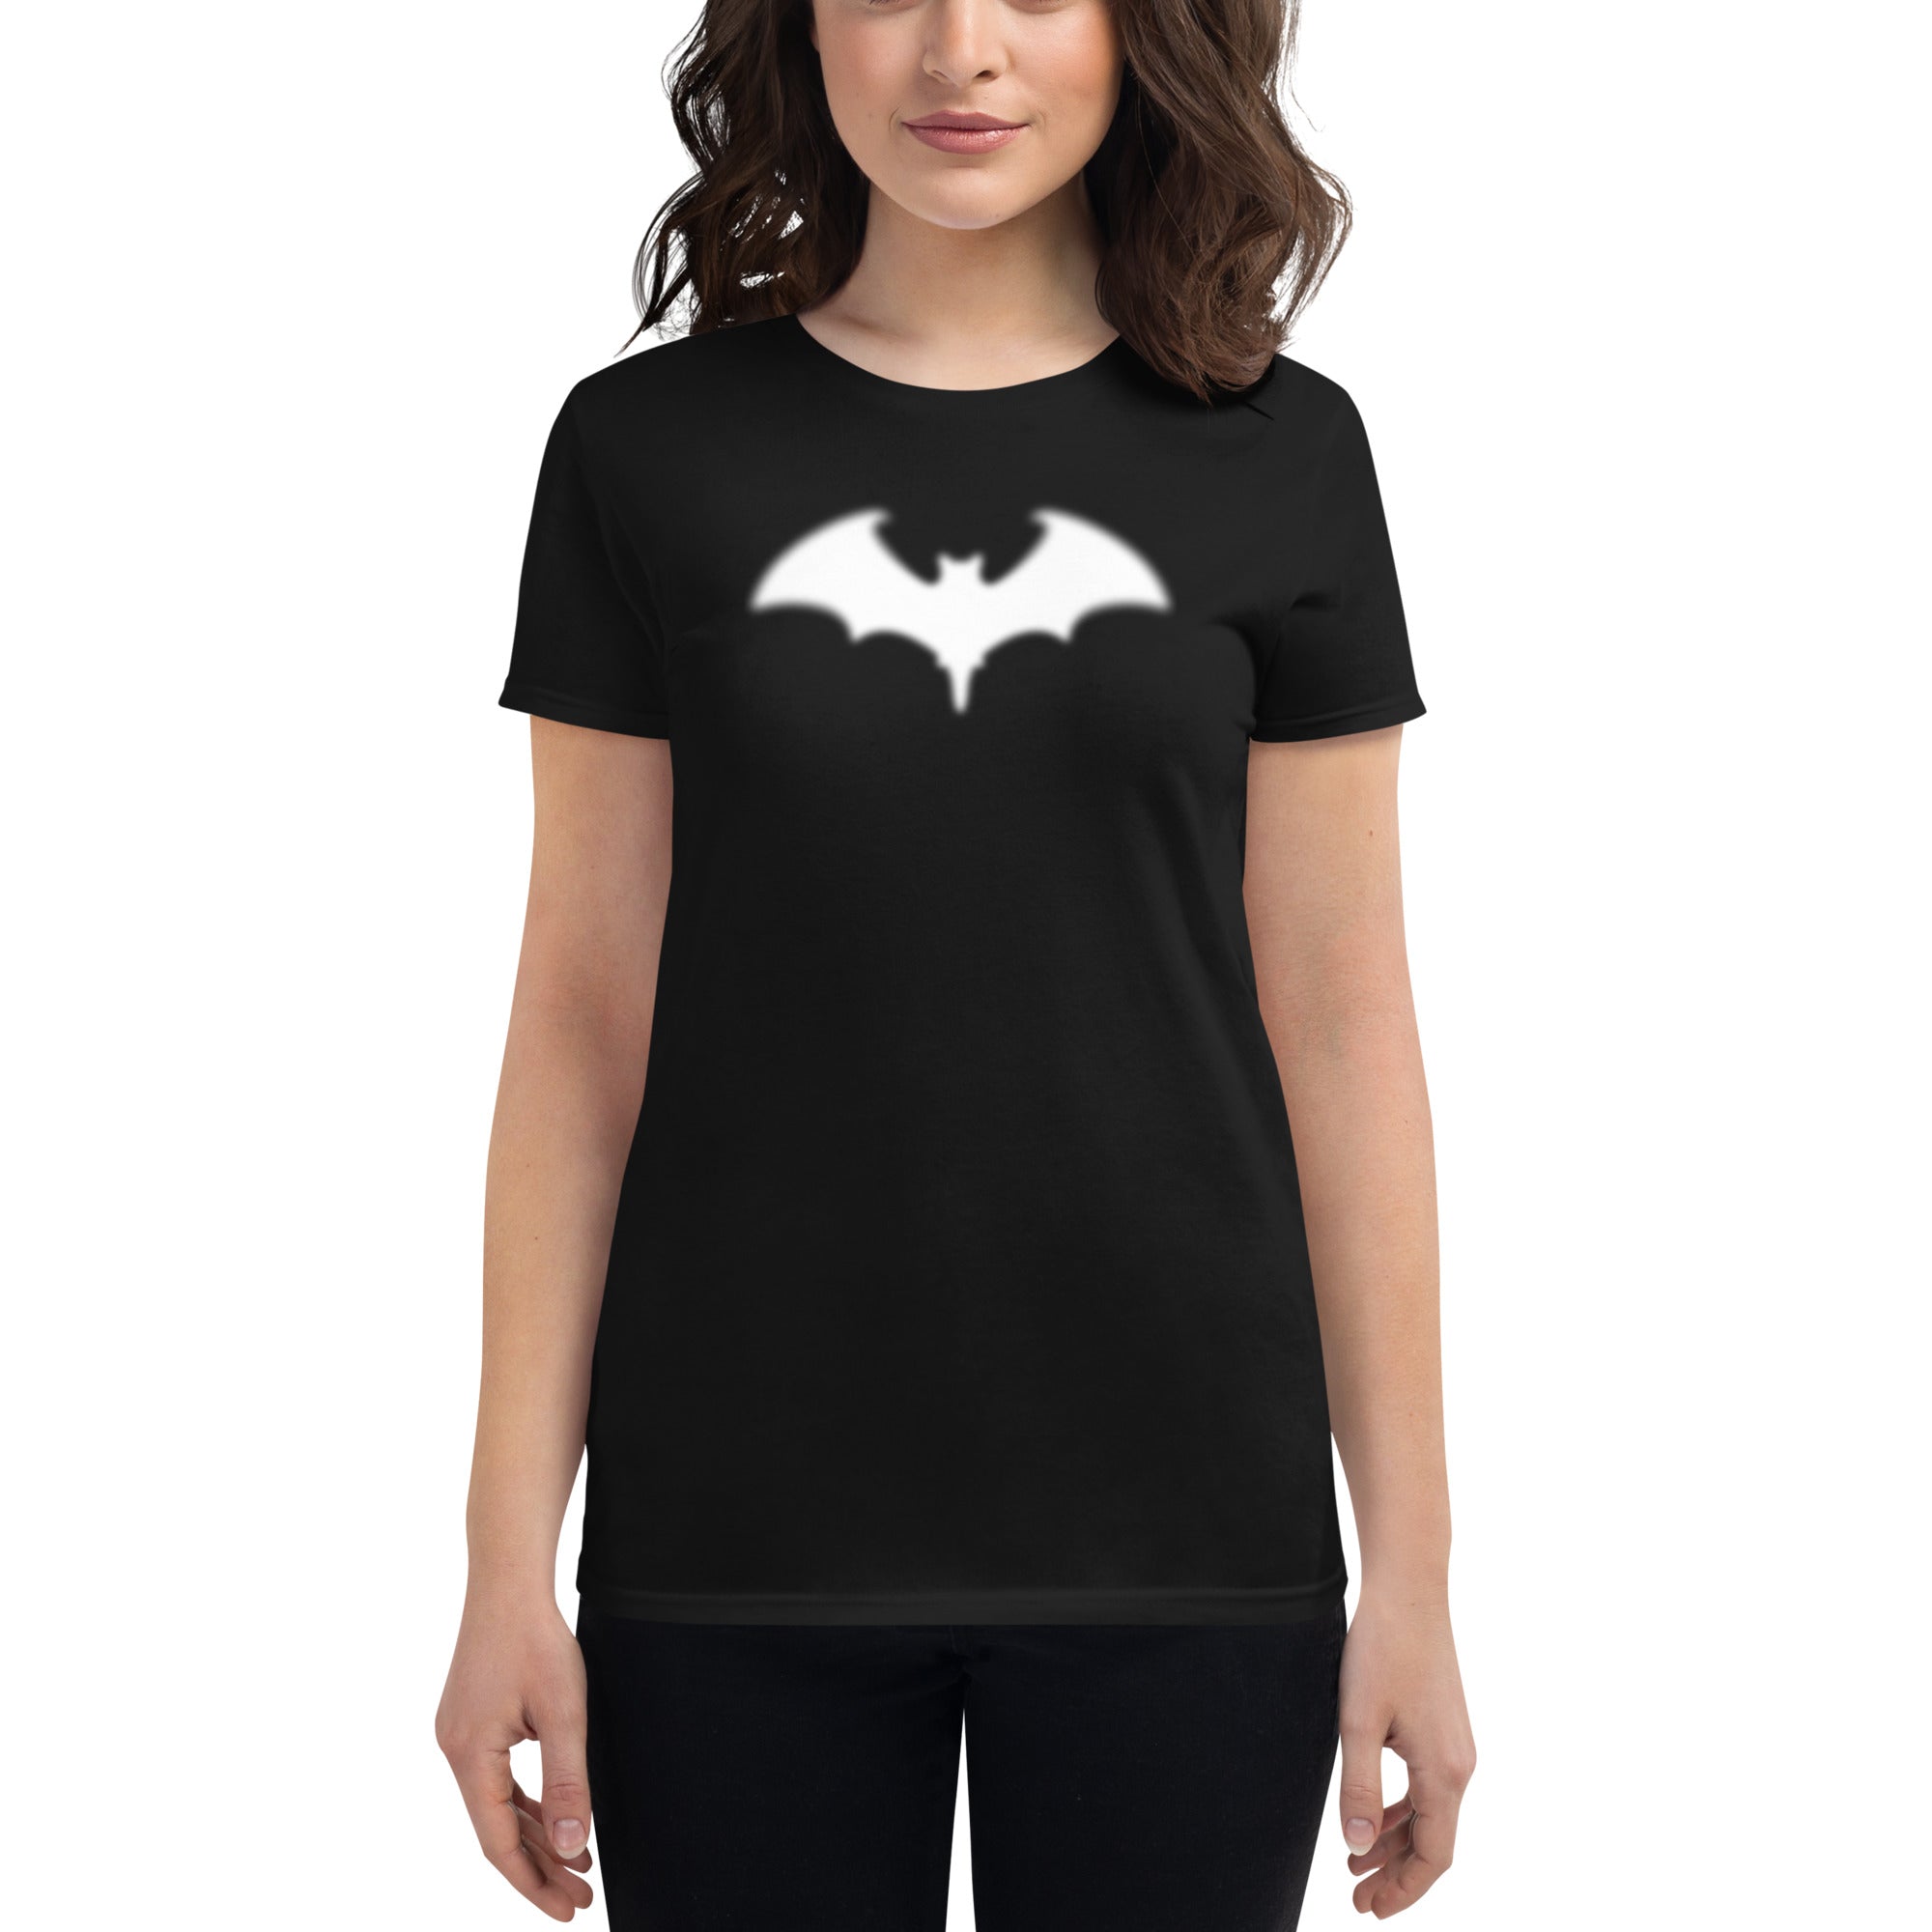 Blurry Bat Halloween Goth Women's Short Sleeve Babydoll T-shirt